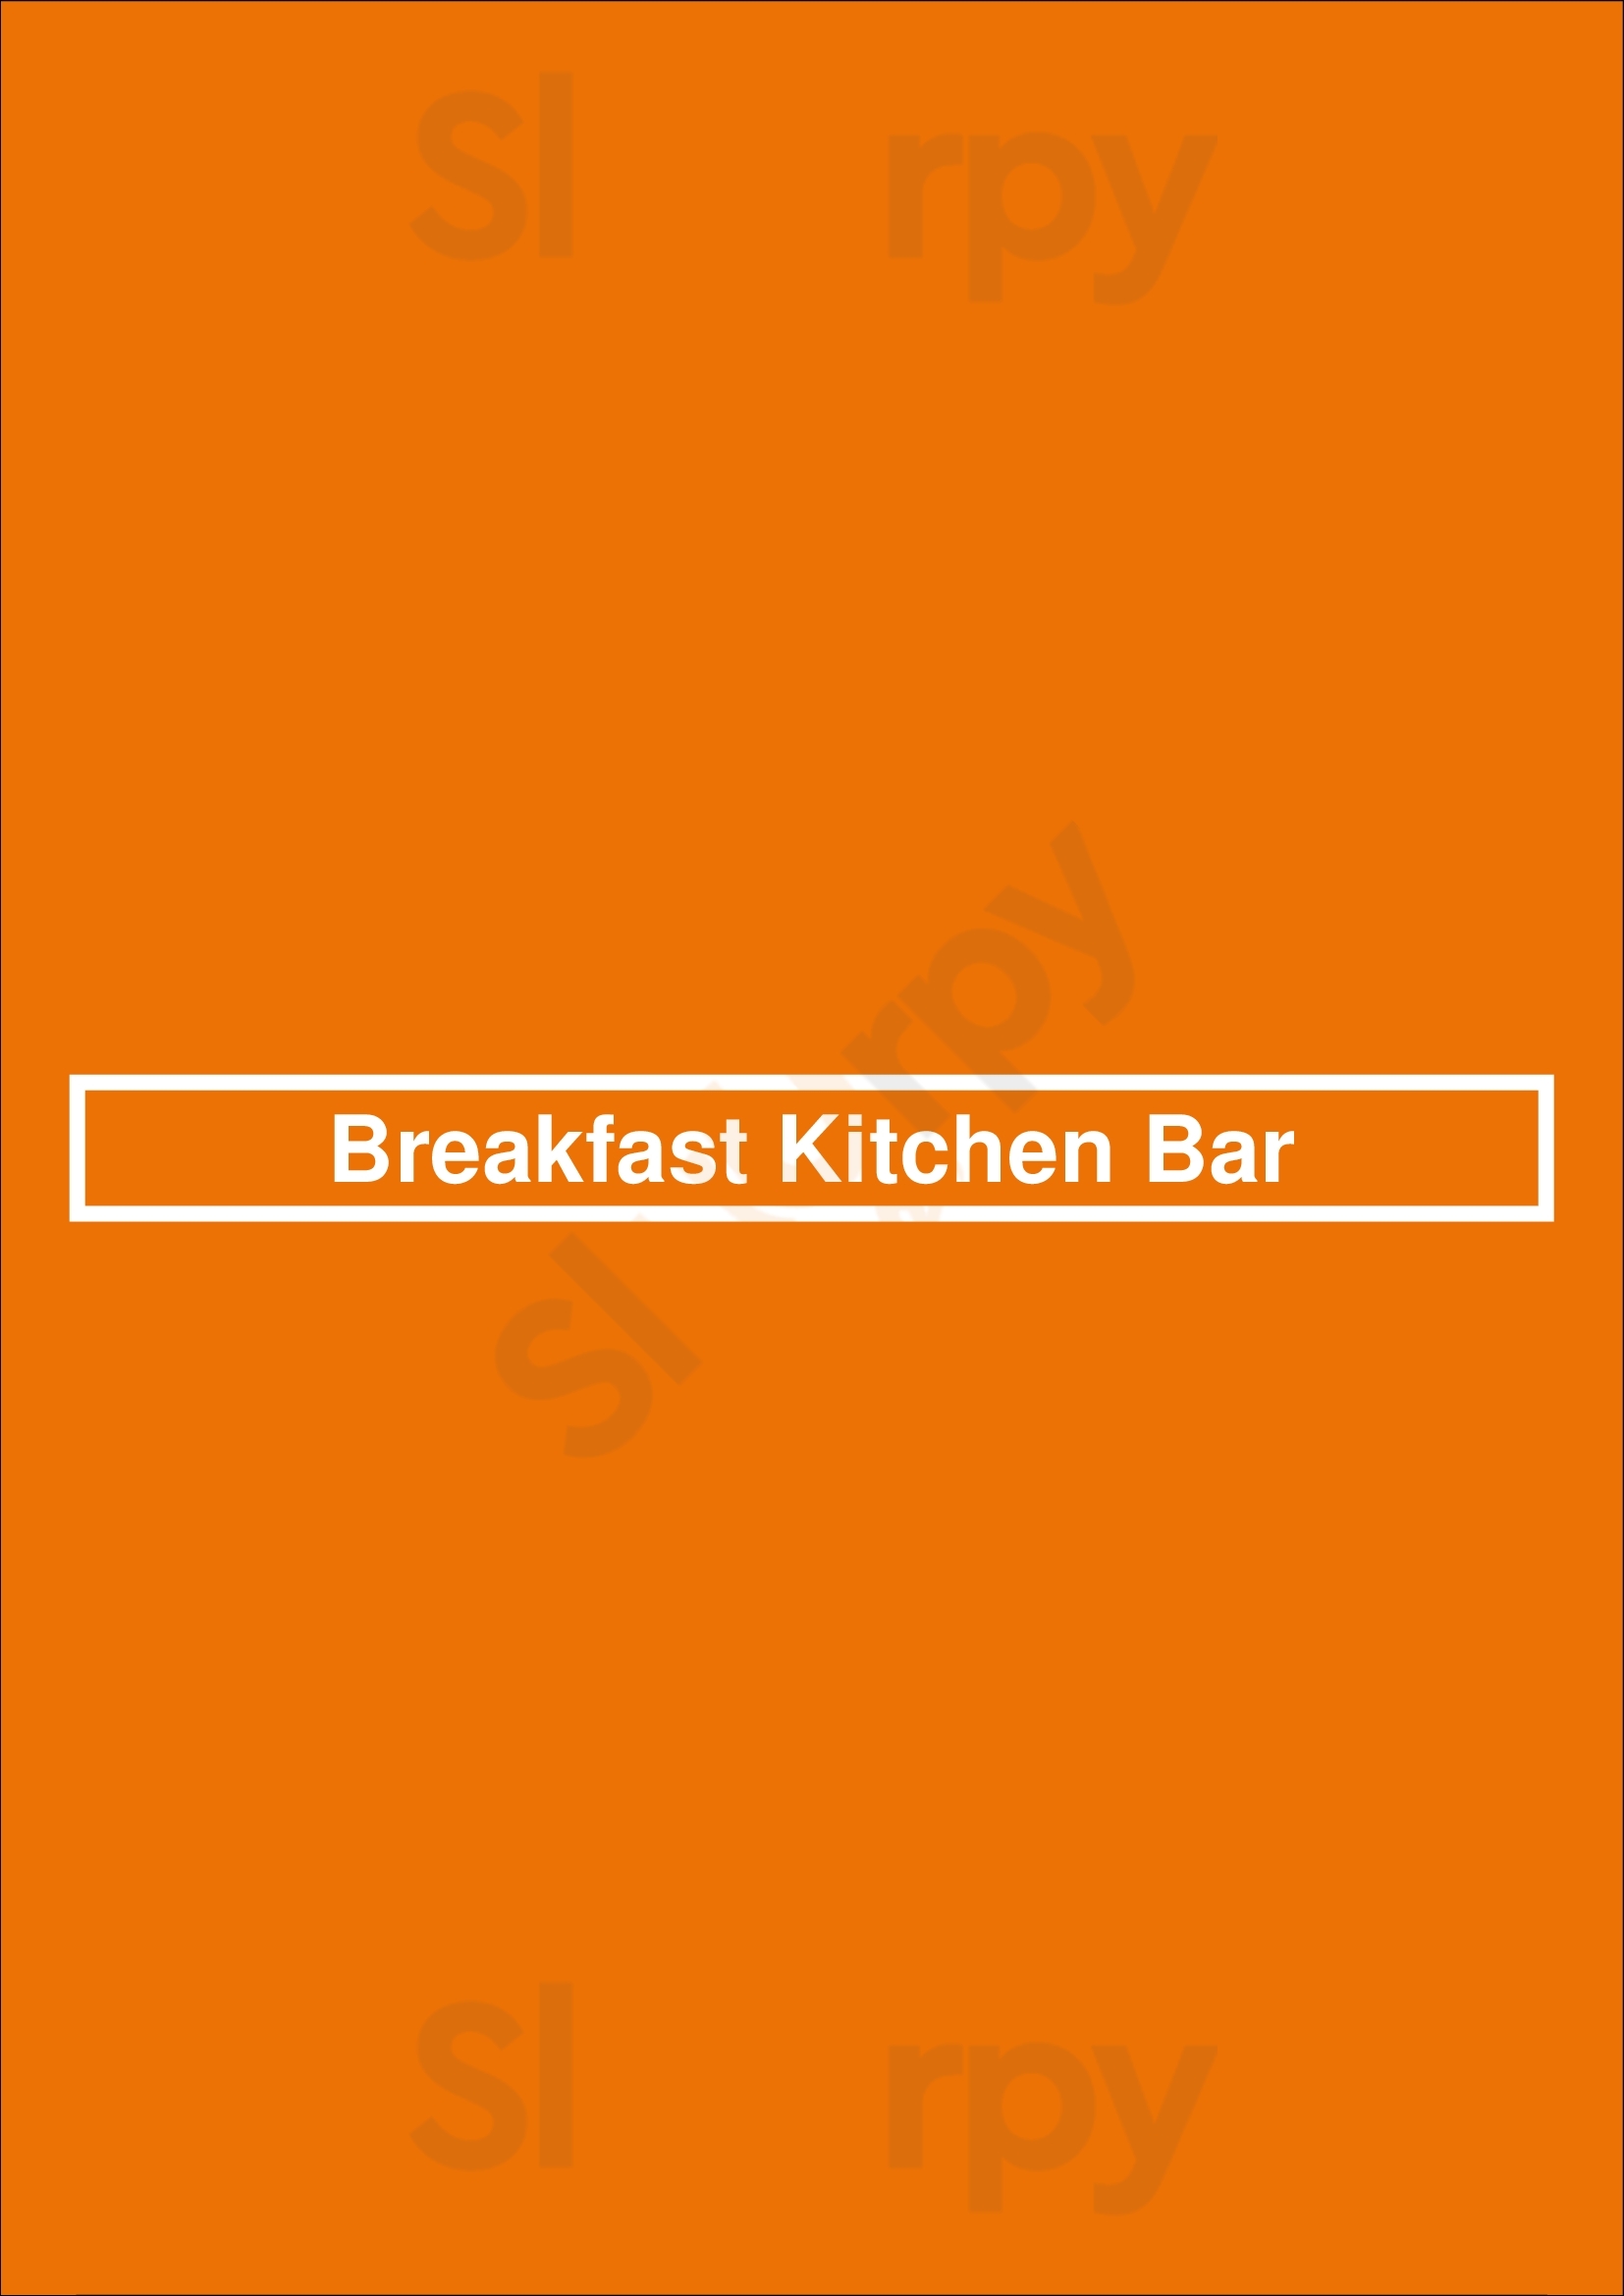 Breakfast Kitchen Bar Scottsdale Menu - 1